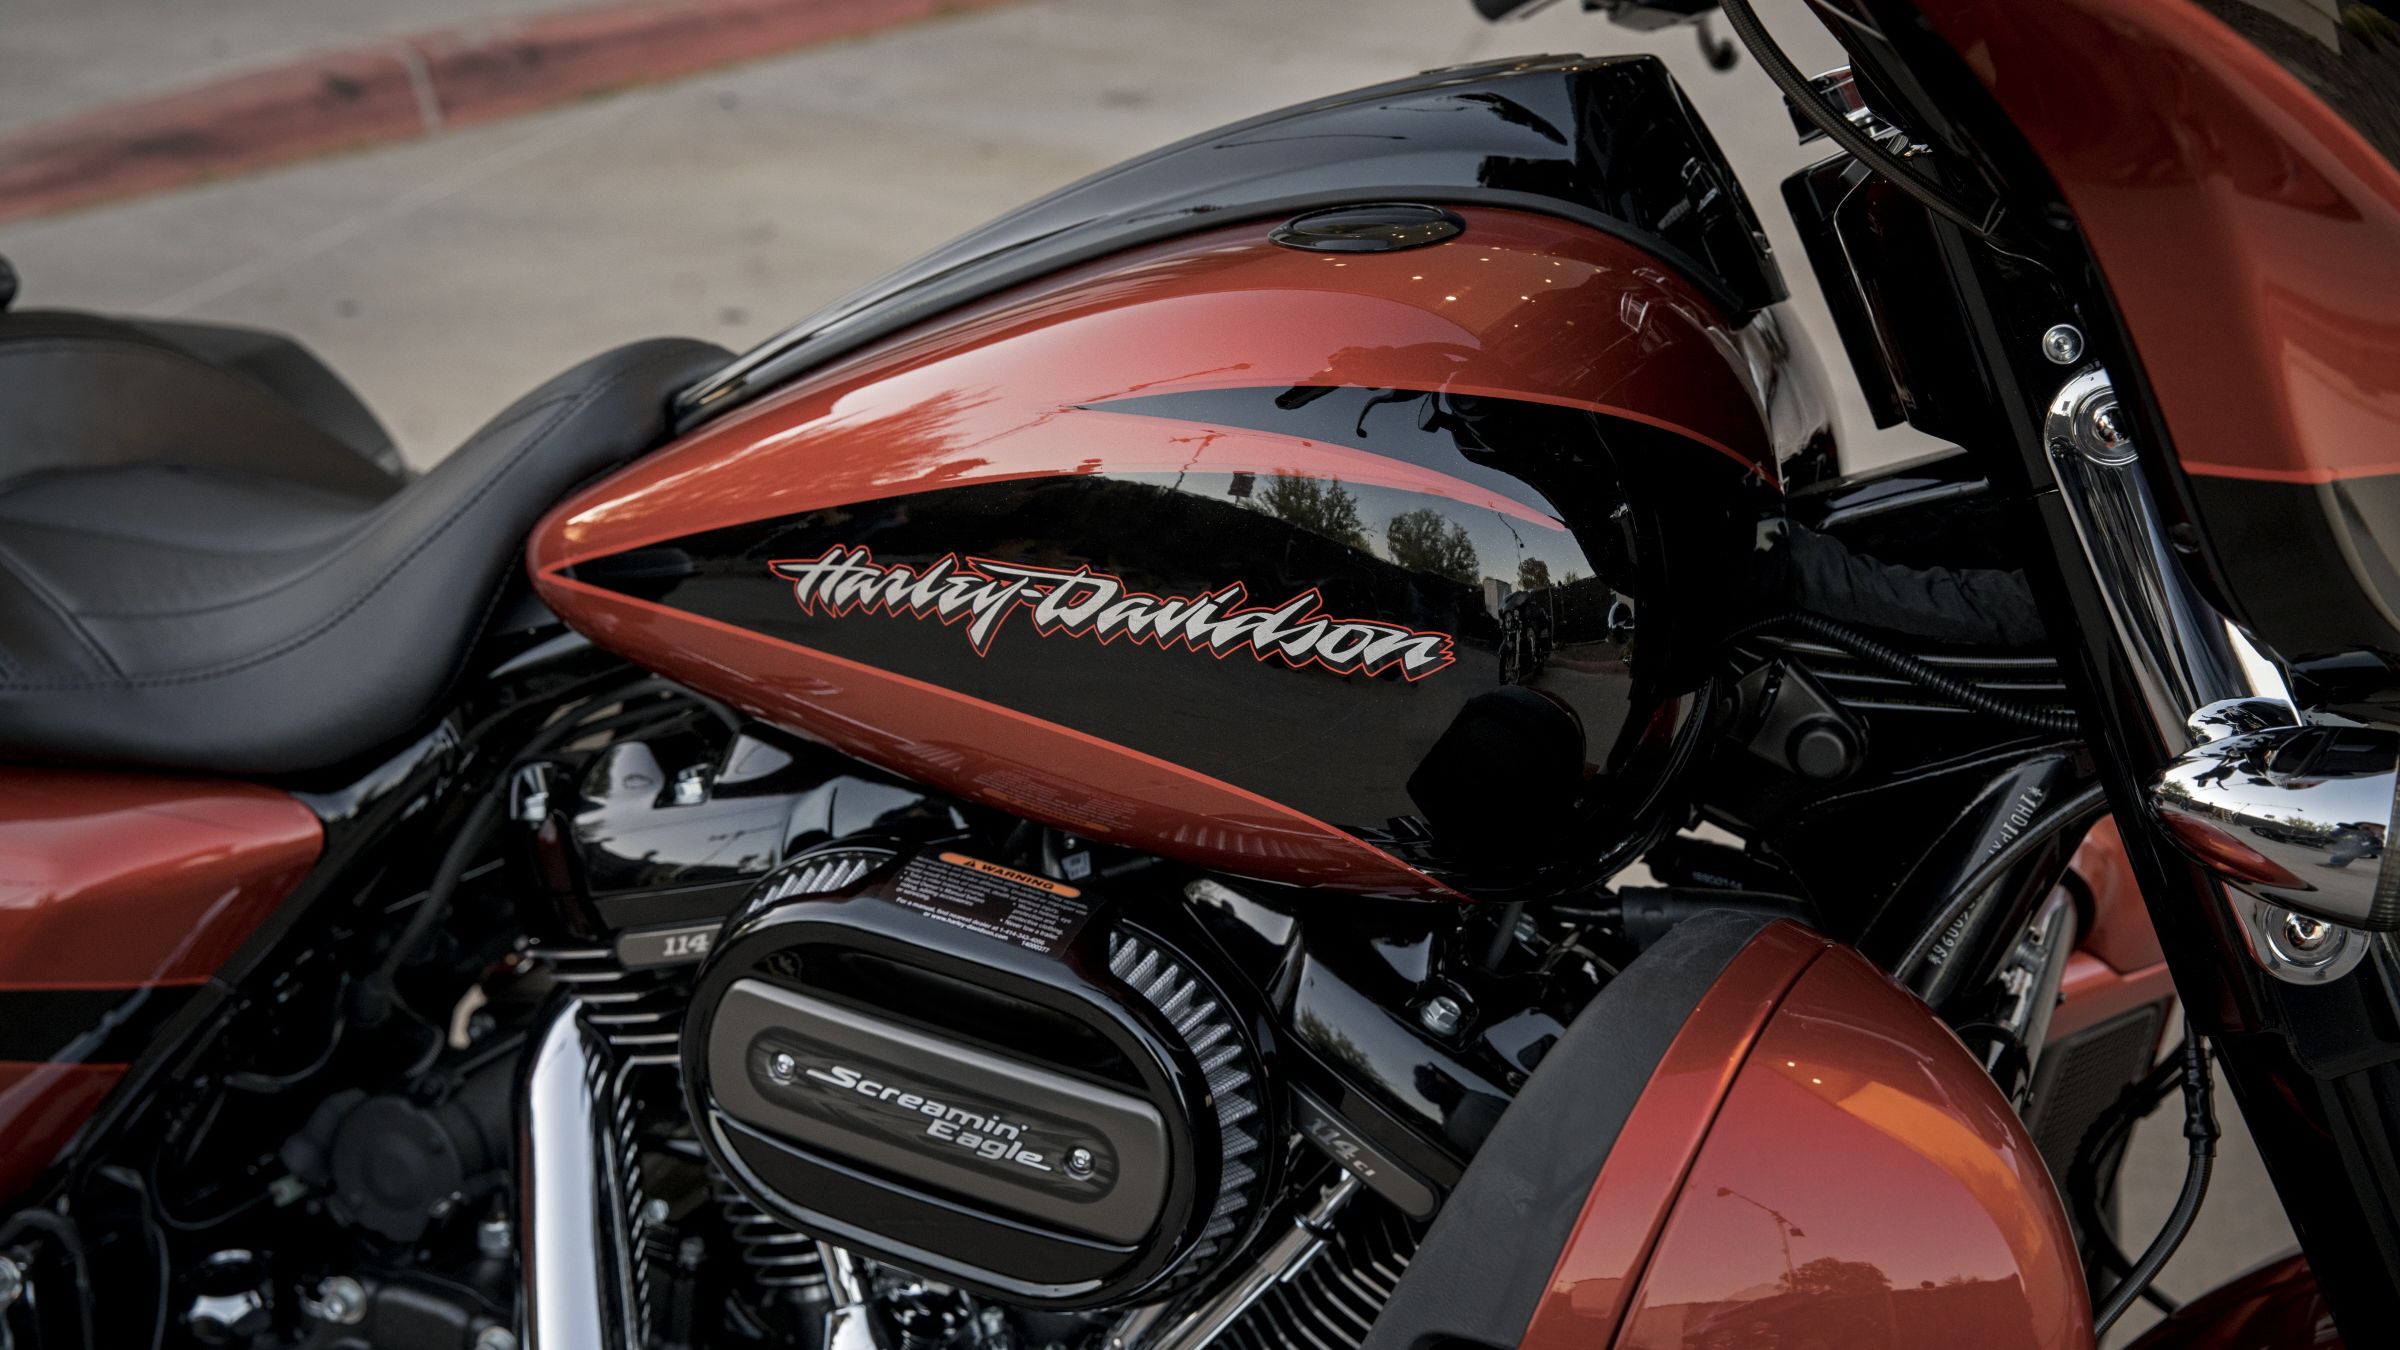 2017 - 2018 Harley-Davidson CVO Street Glide